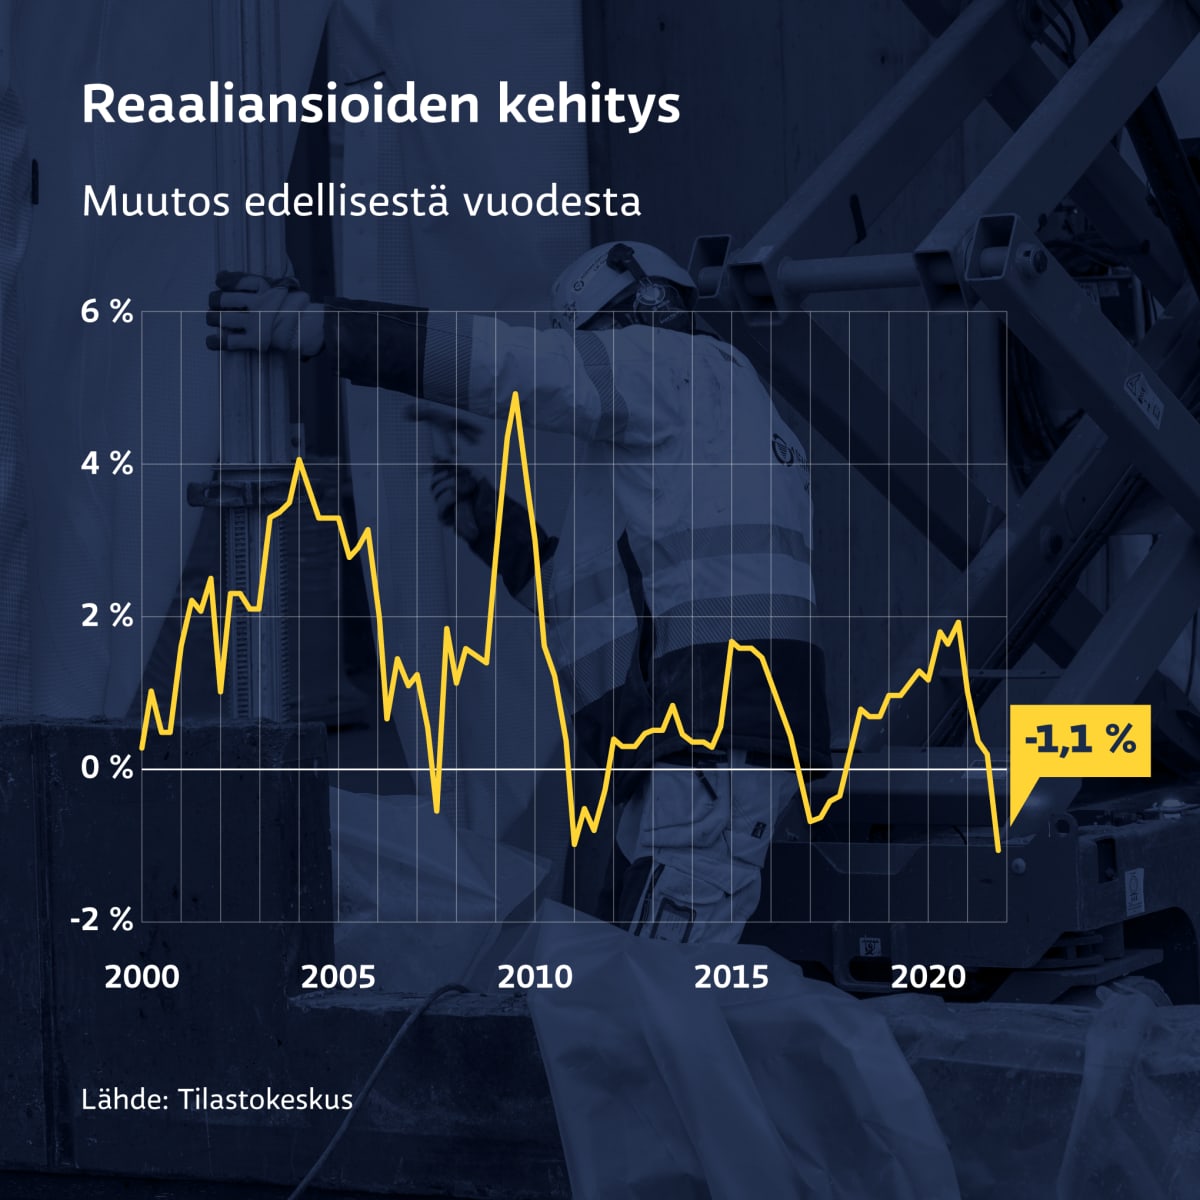 Grafiikka näyttää reaaliansioiden kehityksen 2000-2021. Loka-joulukuussa reaaliansiot laskivat 1,1 prosenttia.